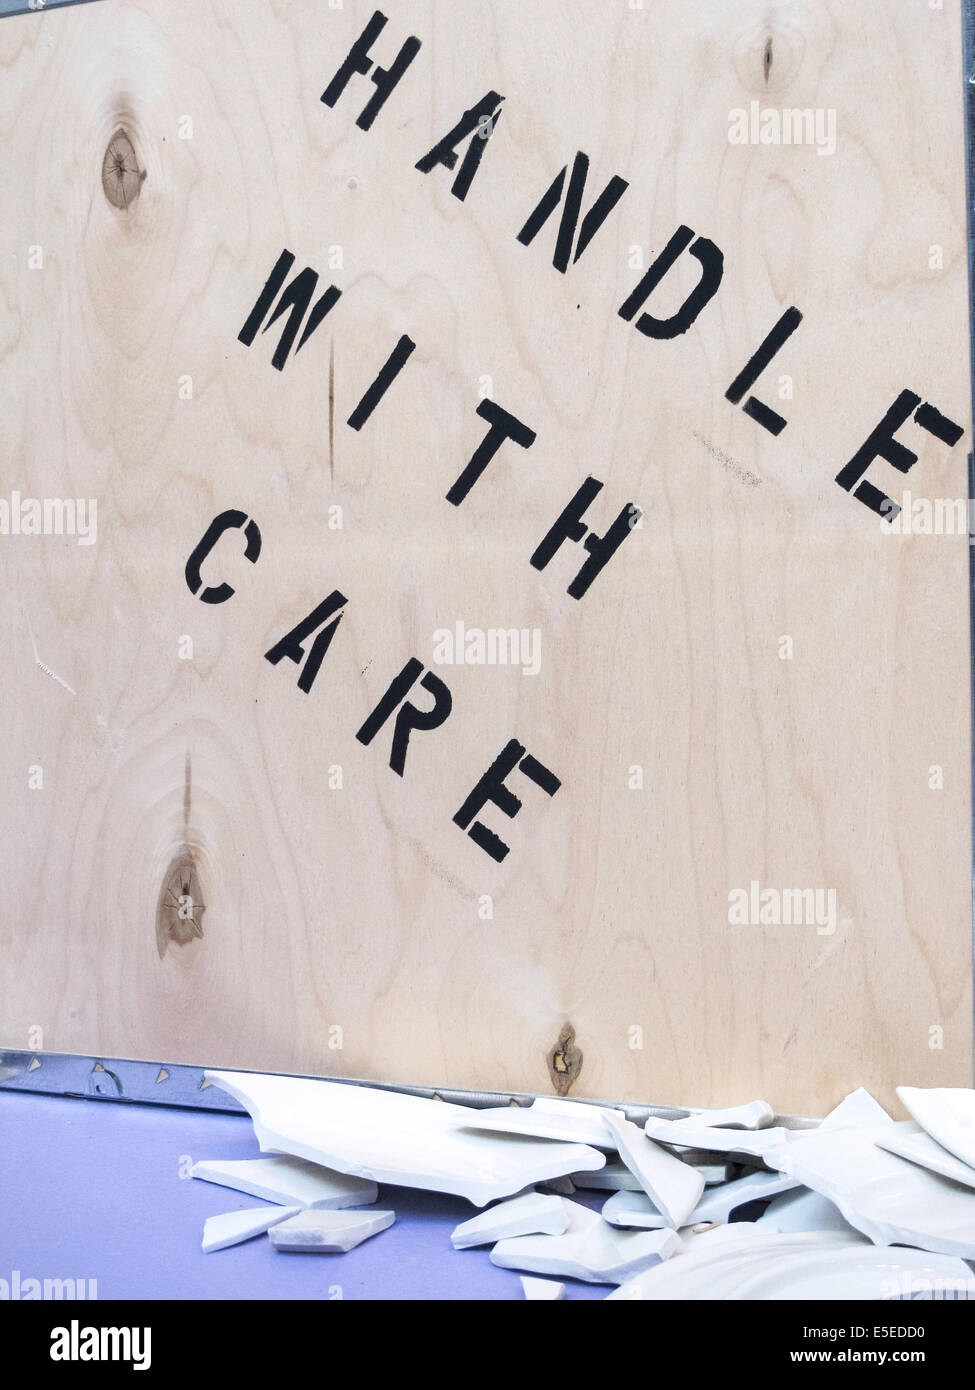 Stilleben, Geschirr zerbrochen und Kiste mit der Aufschrift "Handle with Care", USA Stockfoto